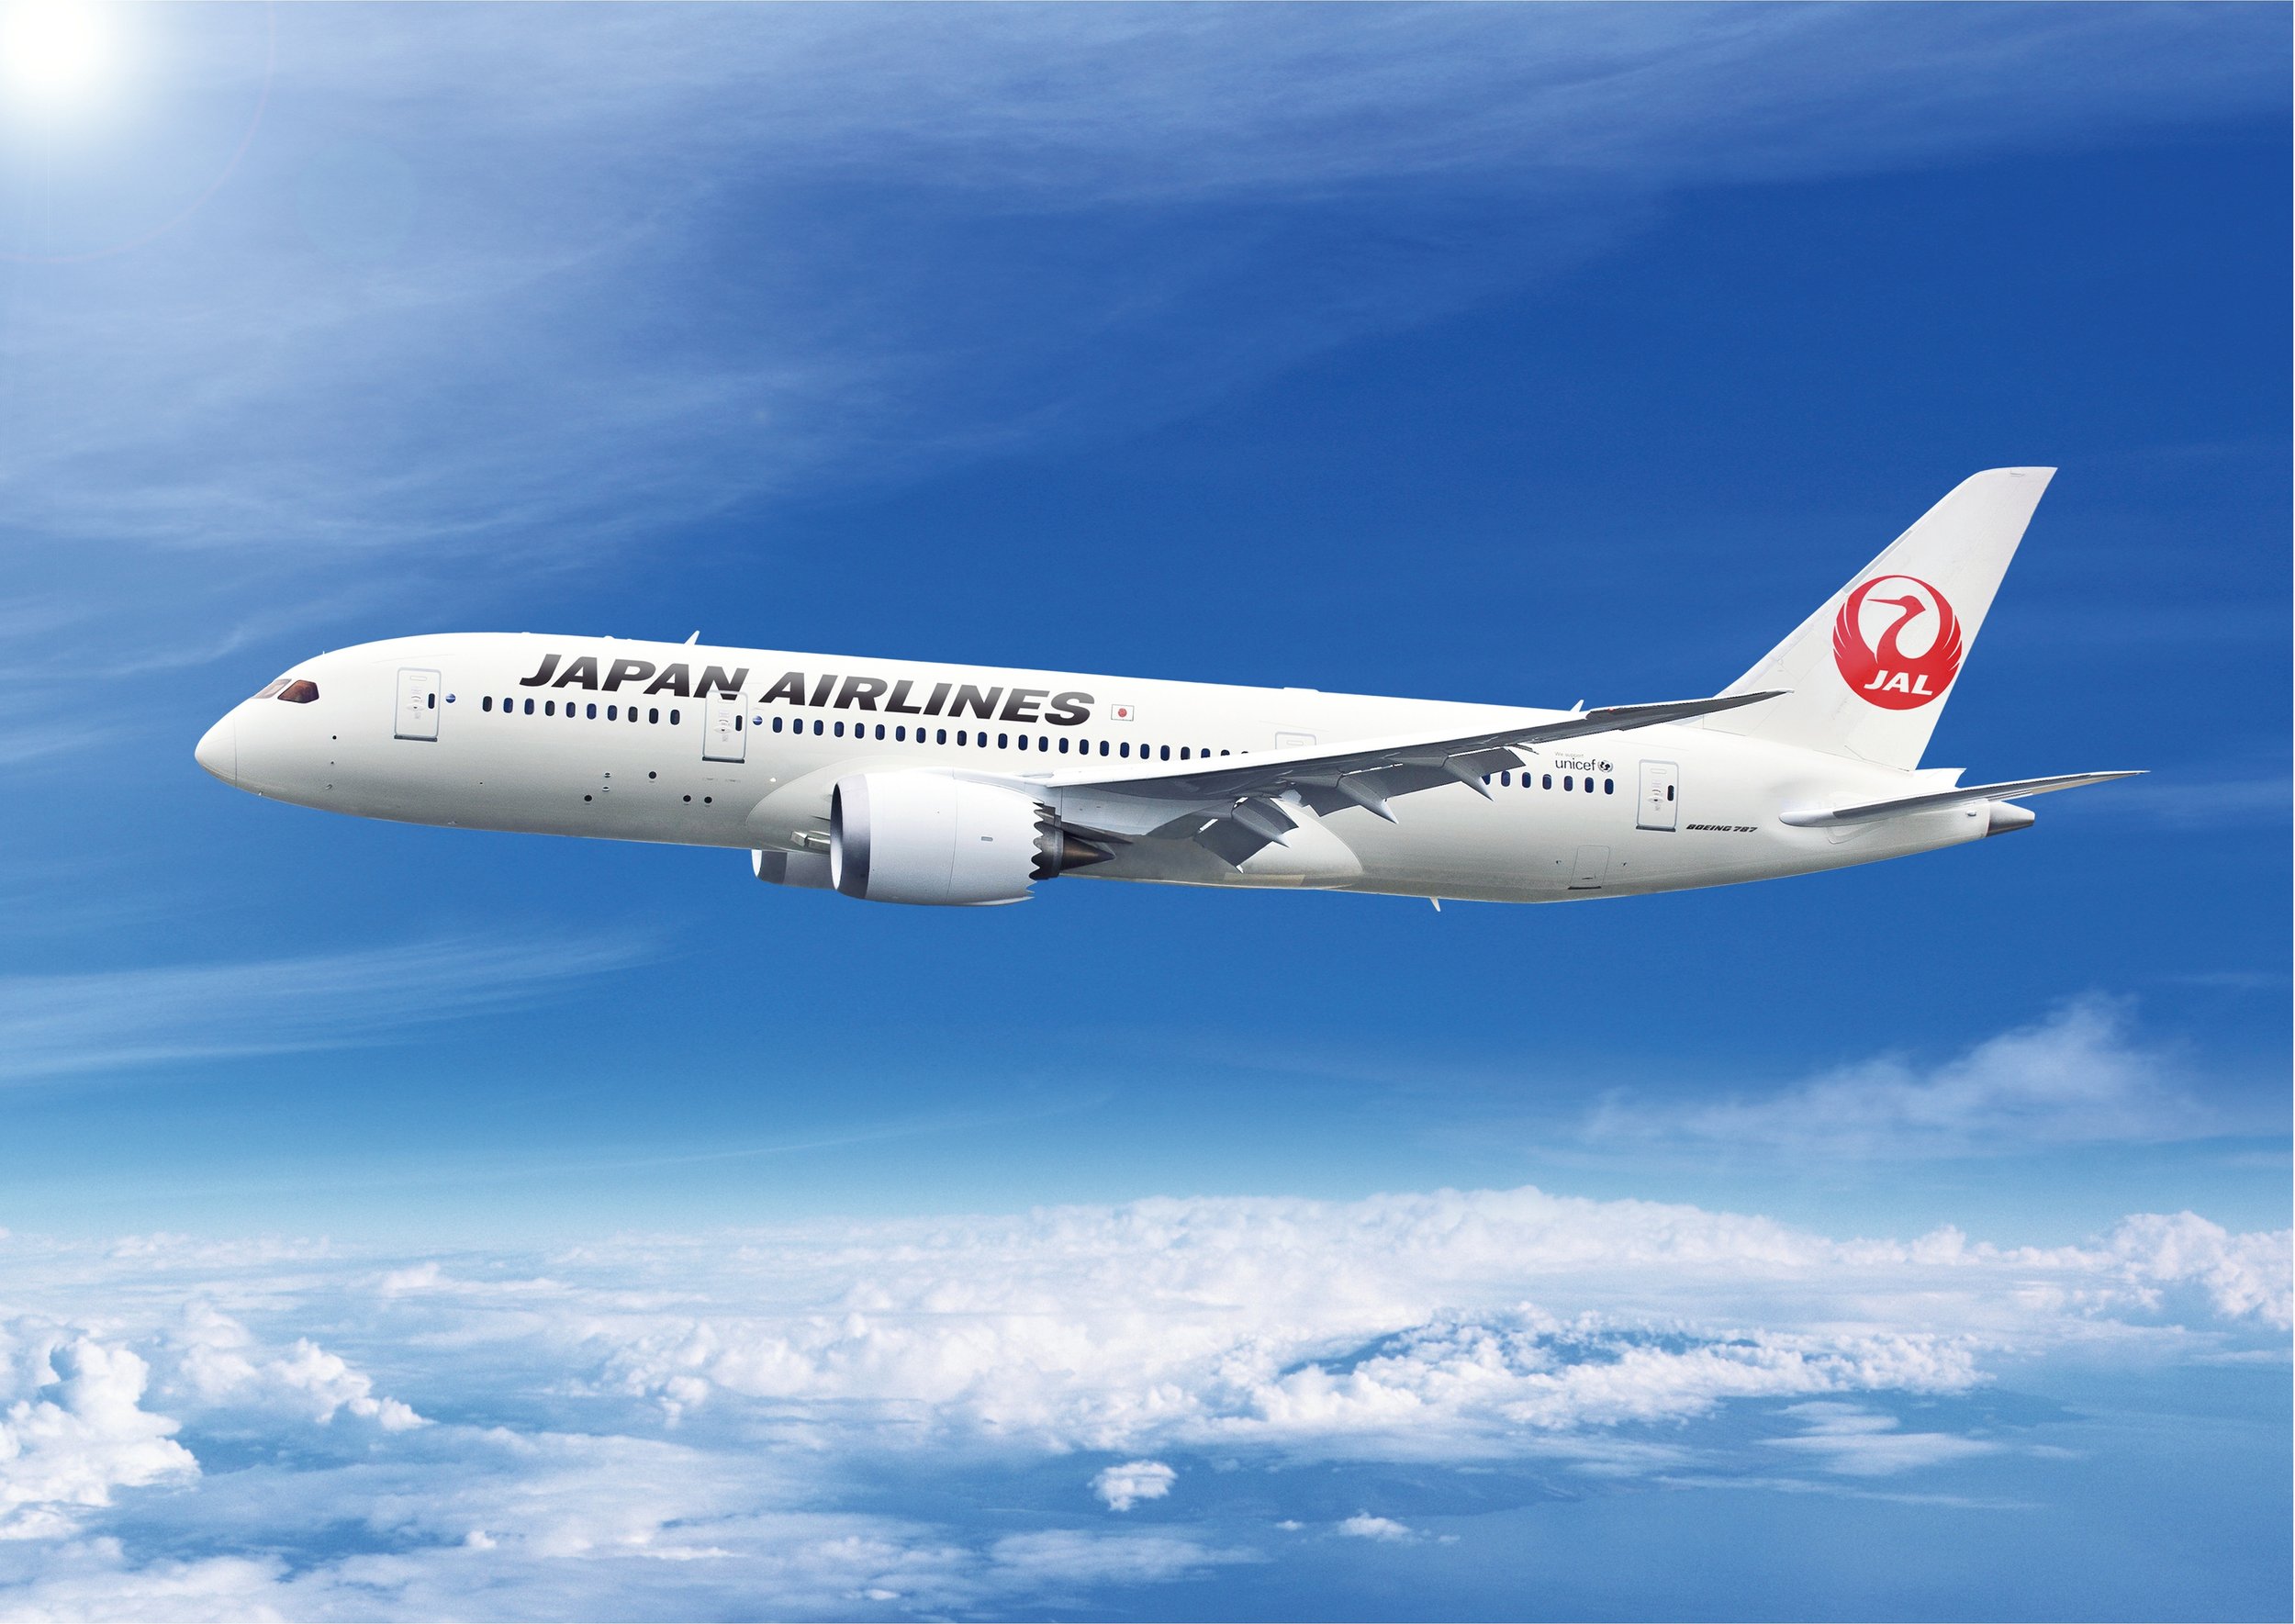 Ιαπωνία: Απίστευτη ταλαιπωρία για επιβάτες αεροπλάνου – Πετούσαν 7 ώρες από αεροδρόμιο σε αεροδρόμιο